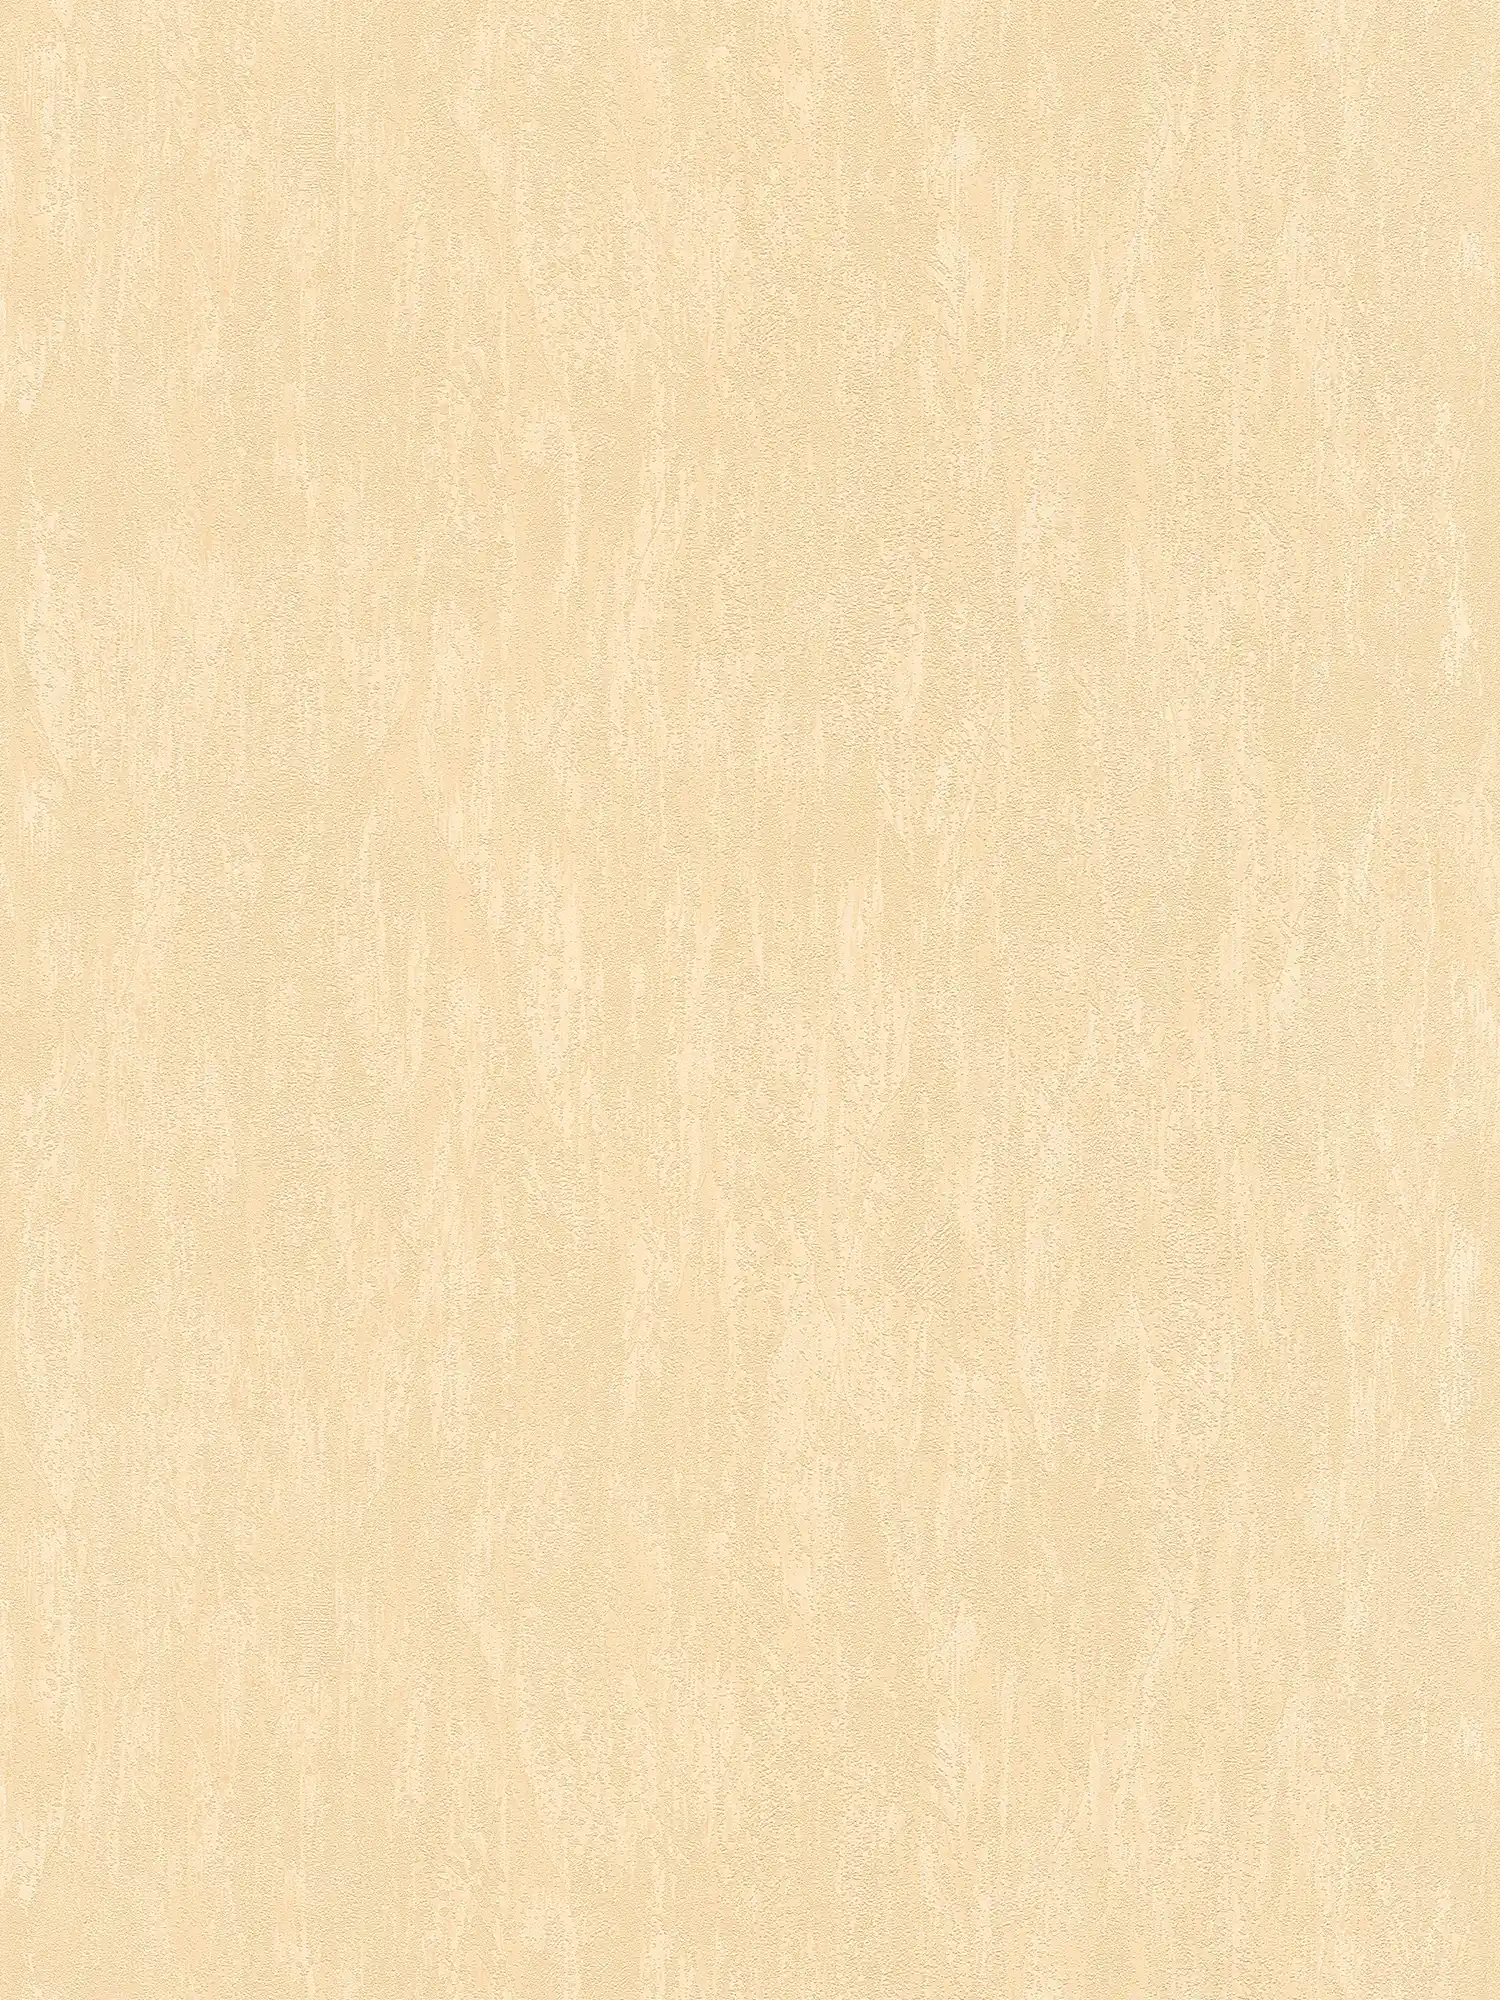 Neutral plain wallpaper in plaster look - beige
